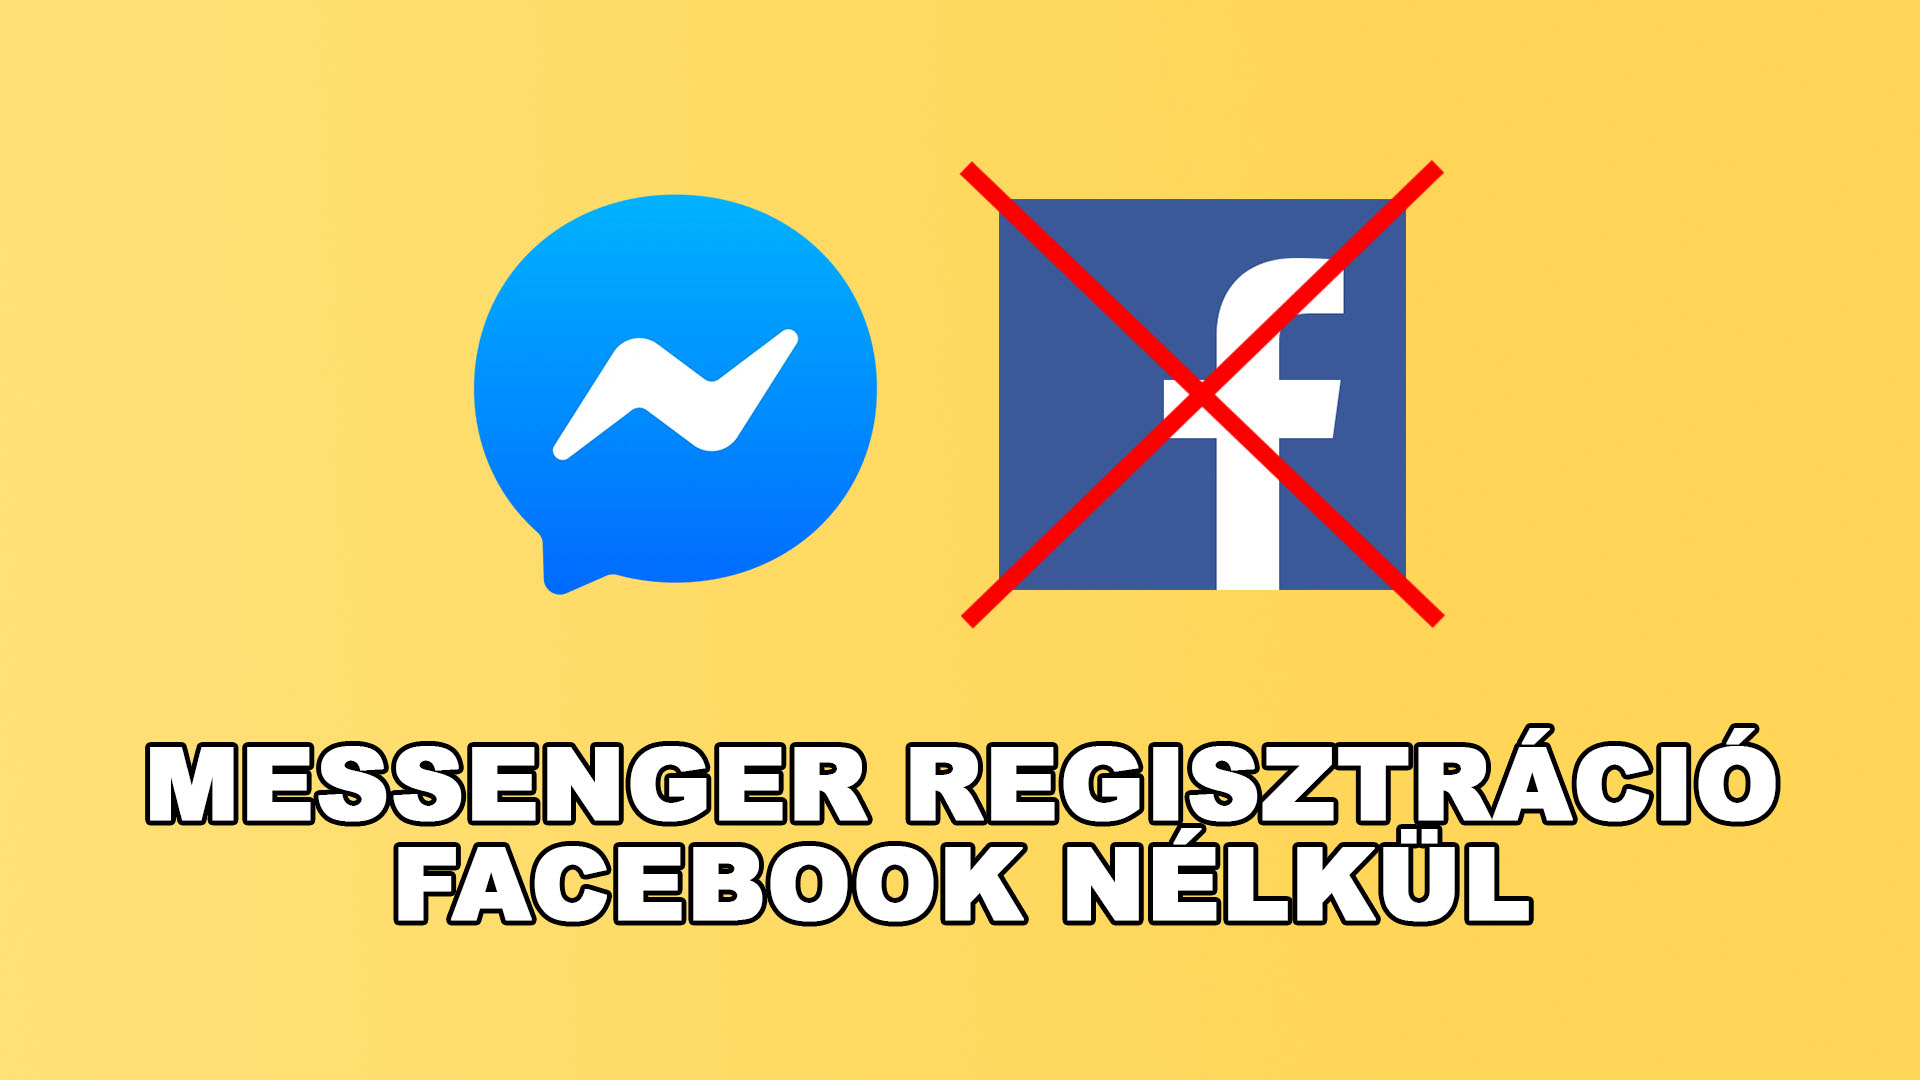 Messenger regisztráció Facebook fiók nélkül cikk nyítóképe